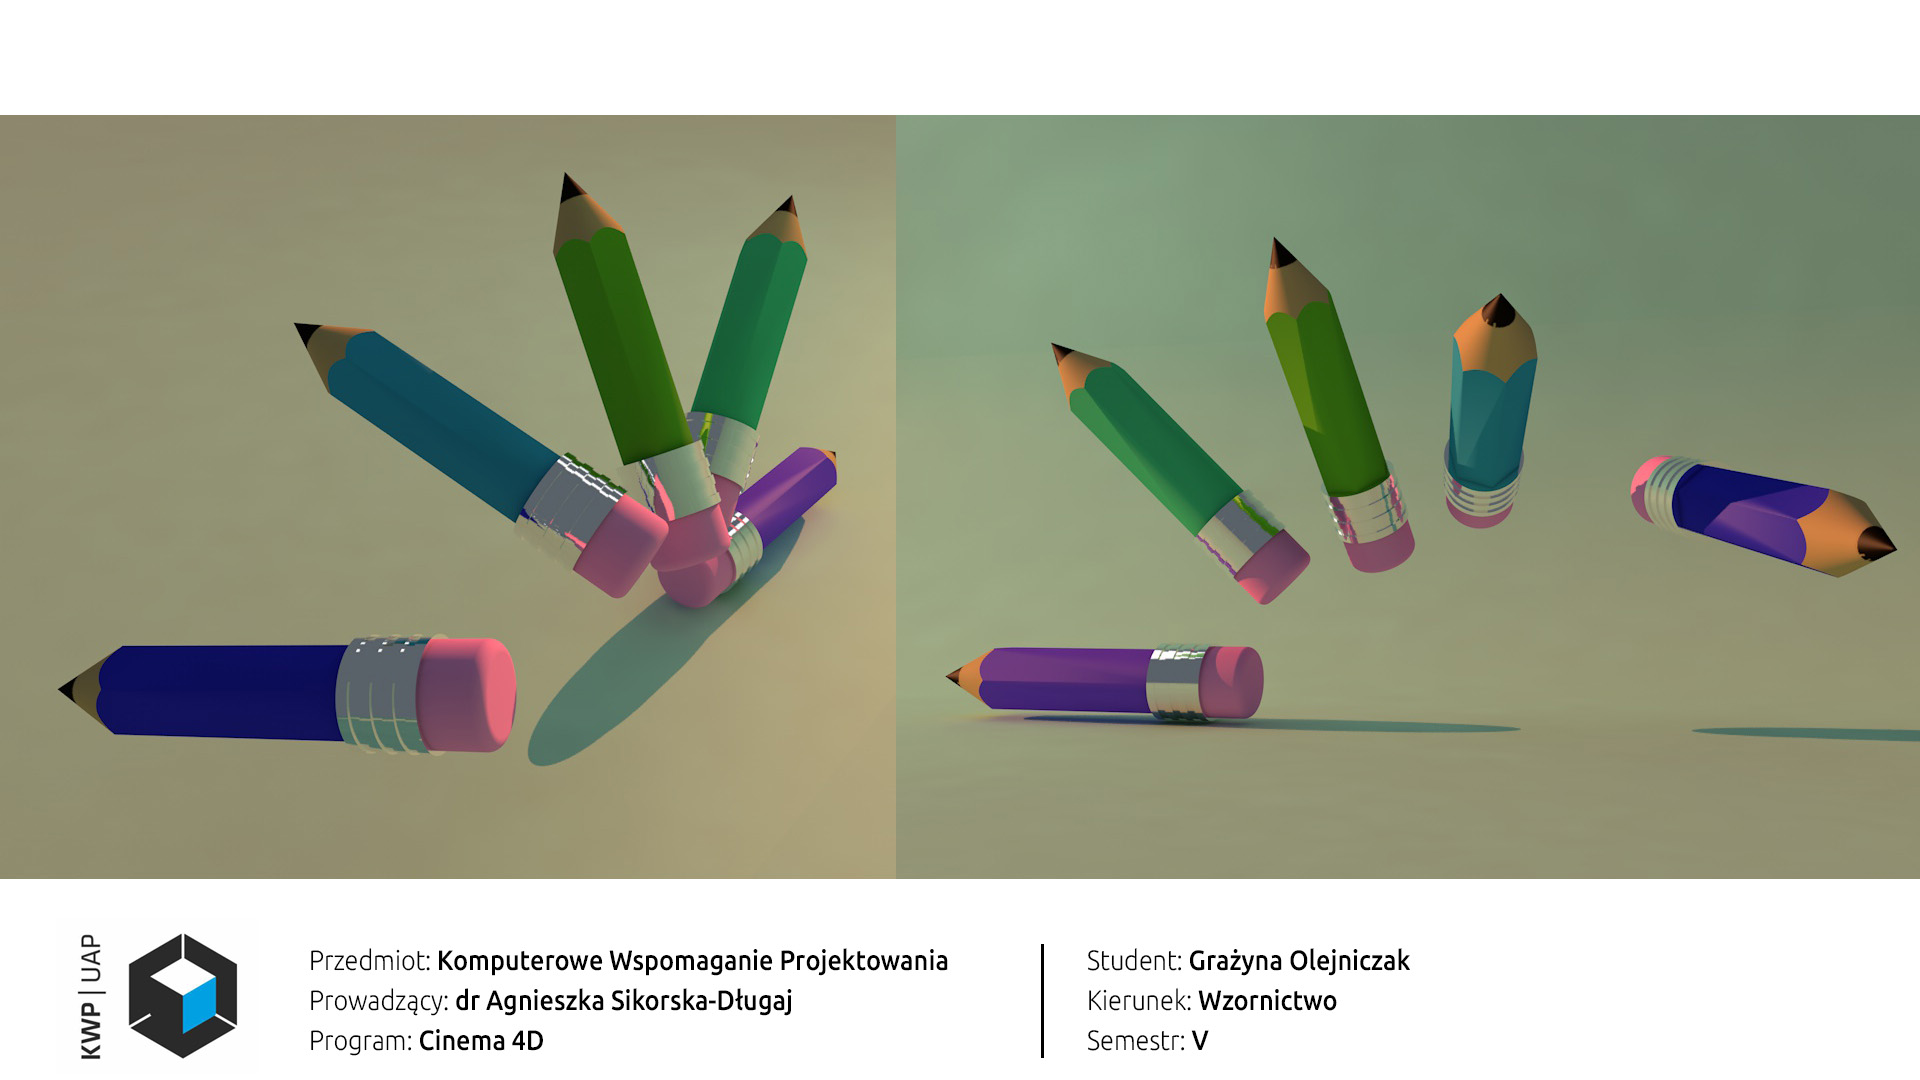 Rendery z programu Cinema 4D. Model czterech kolorowych ołówków z gumką. Swobodna kompozycja, ołówki unoszą się nad podłogą. Tło zielono-żółty gradient.